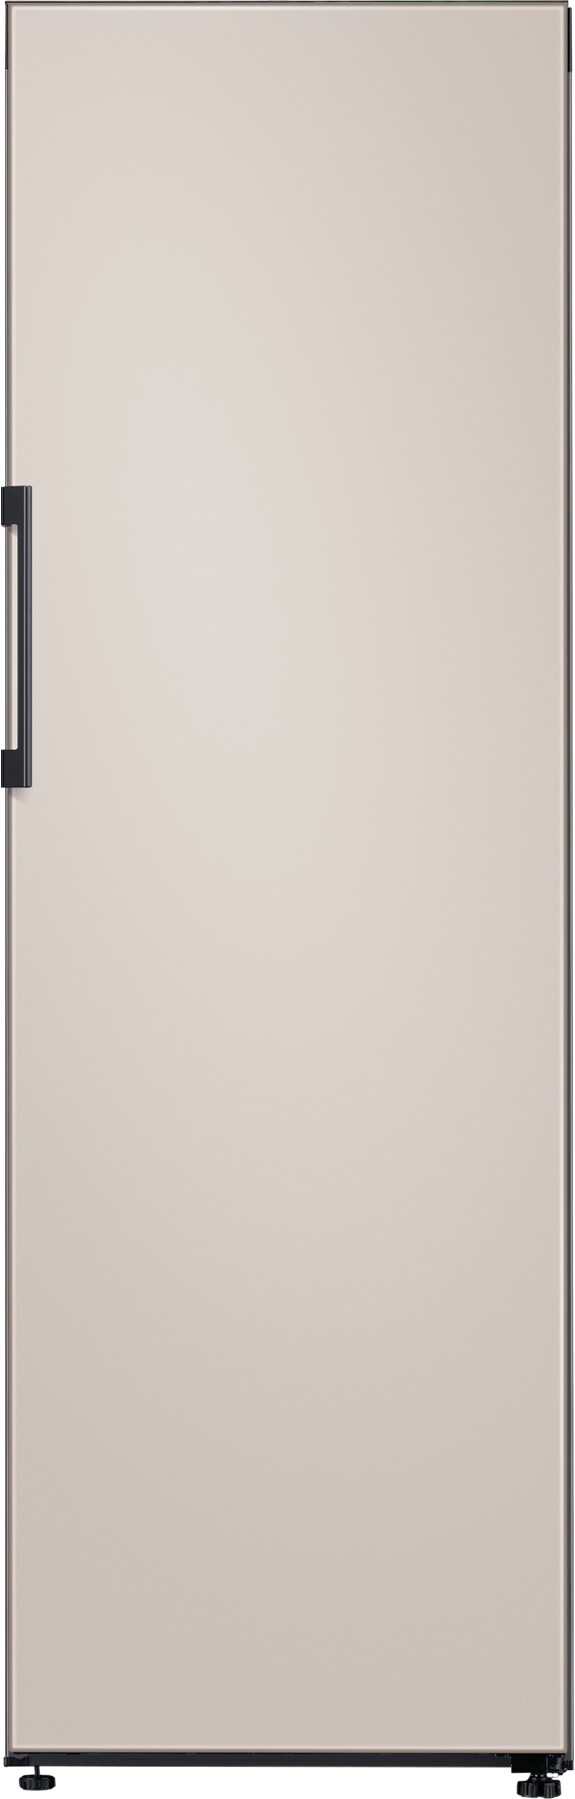 Samsung Bespoke – kjøleskap og fryser - Elkjøp